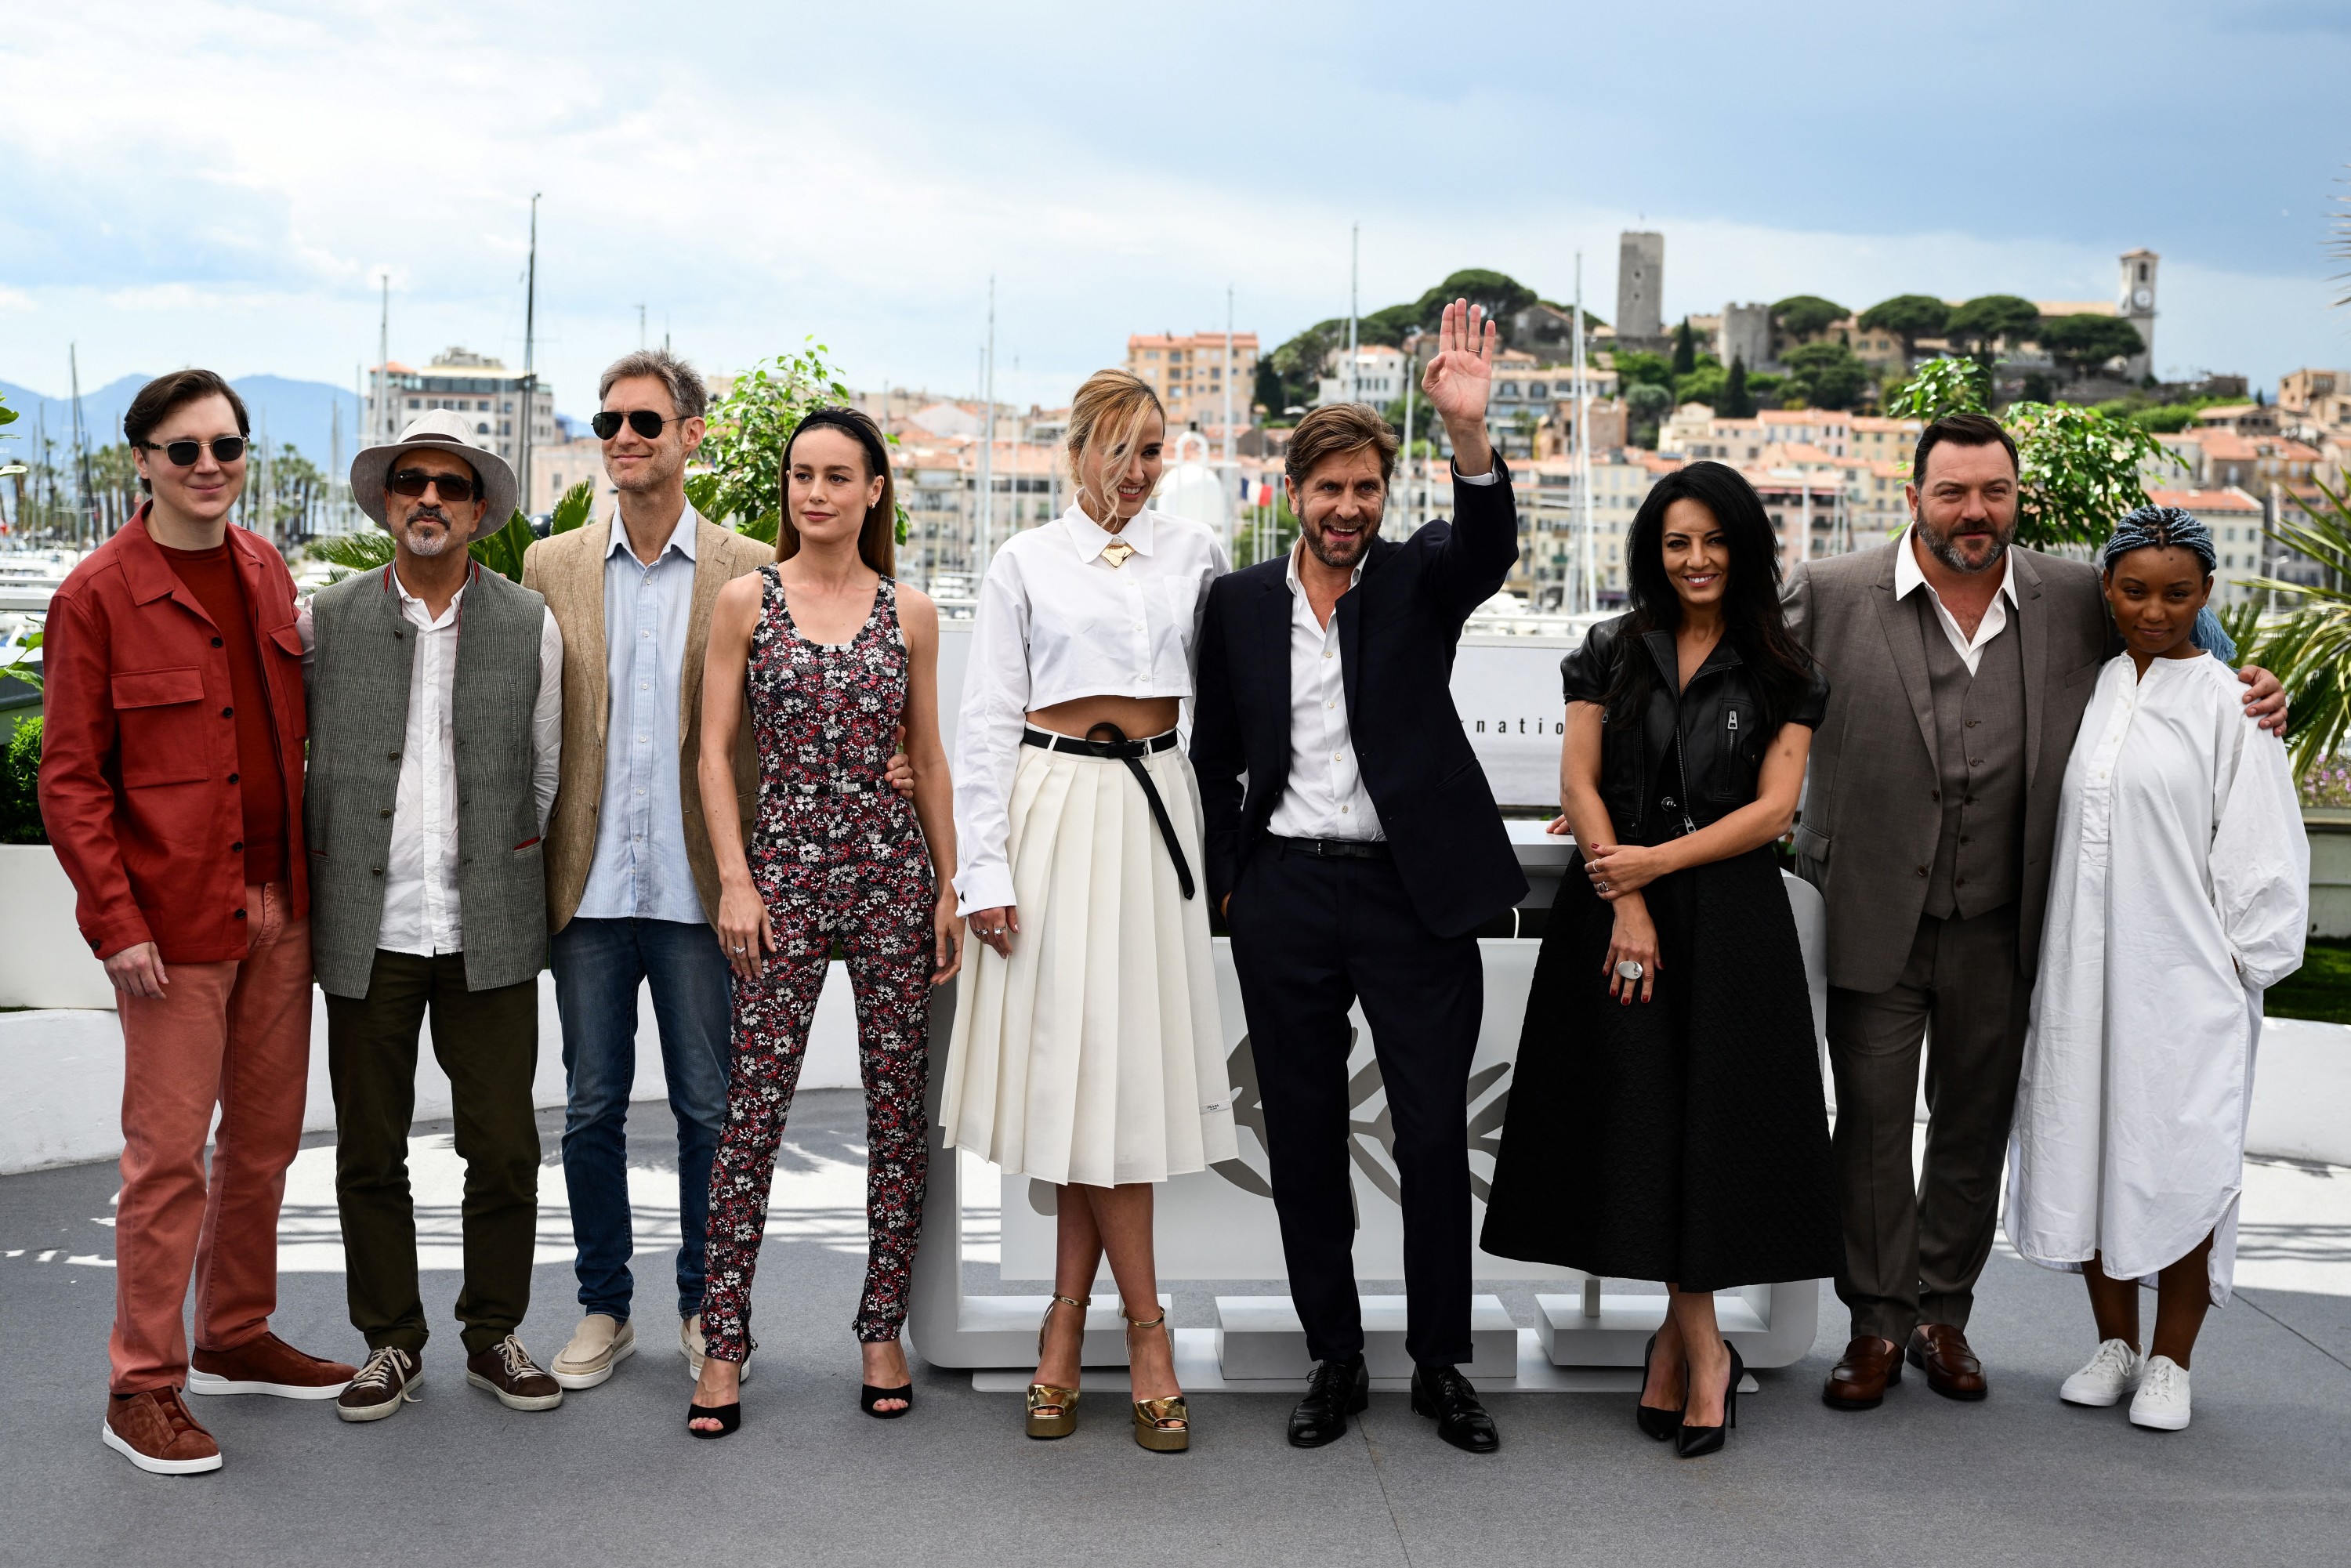 Festival de Cannes 2023: Chiara Mastroianni sera la maîtresse de cérémonie  - Le Soir